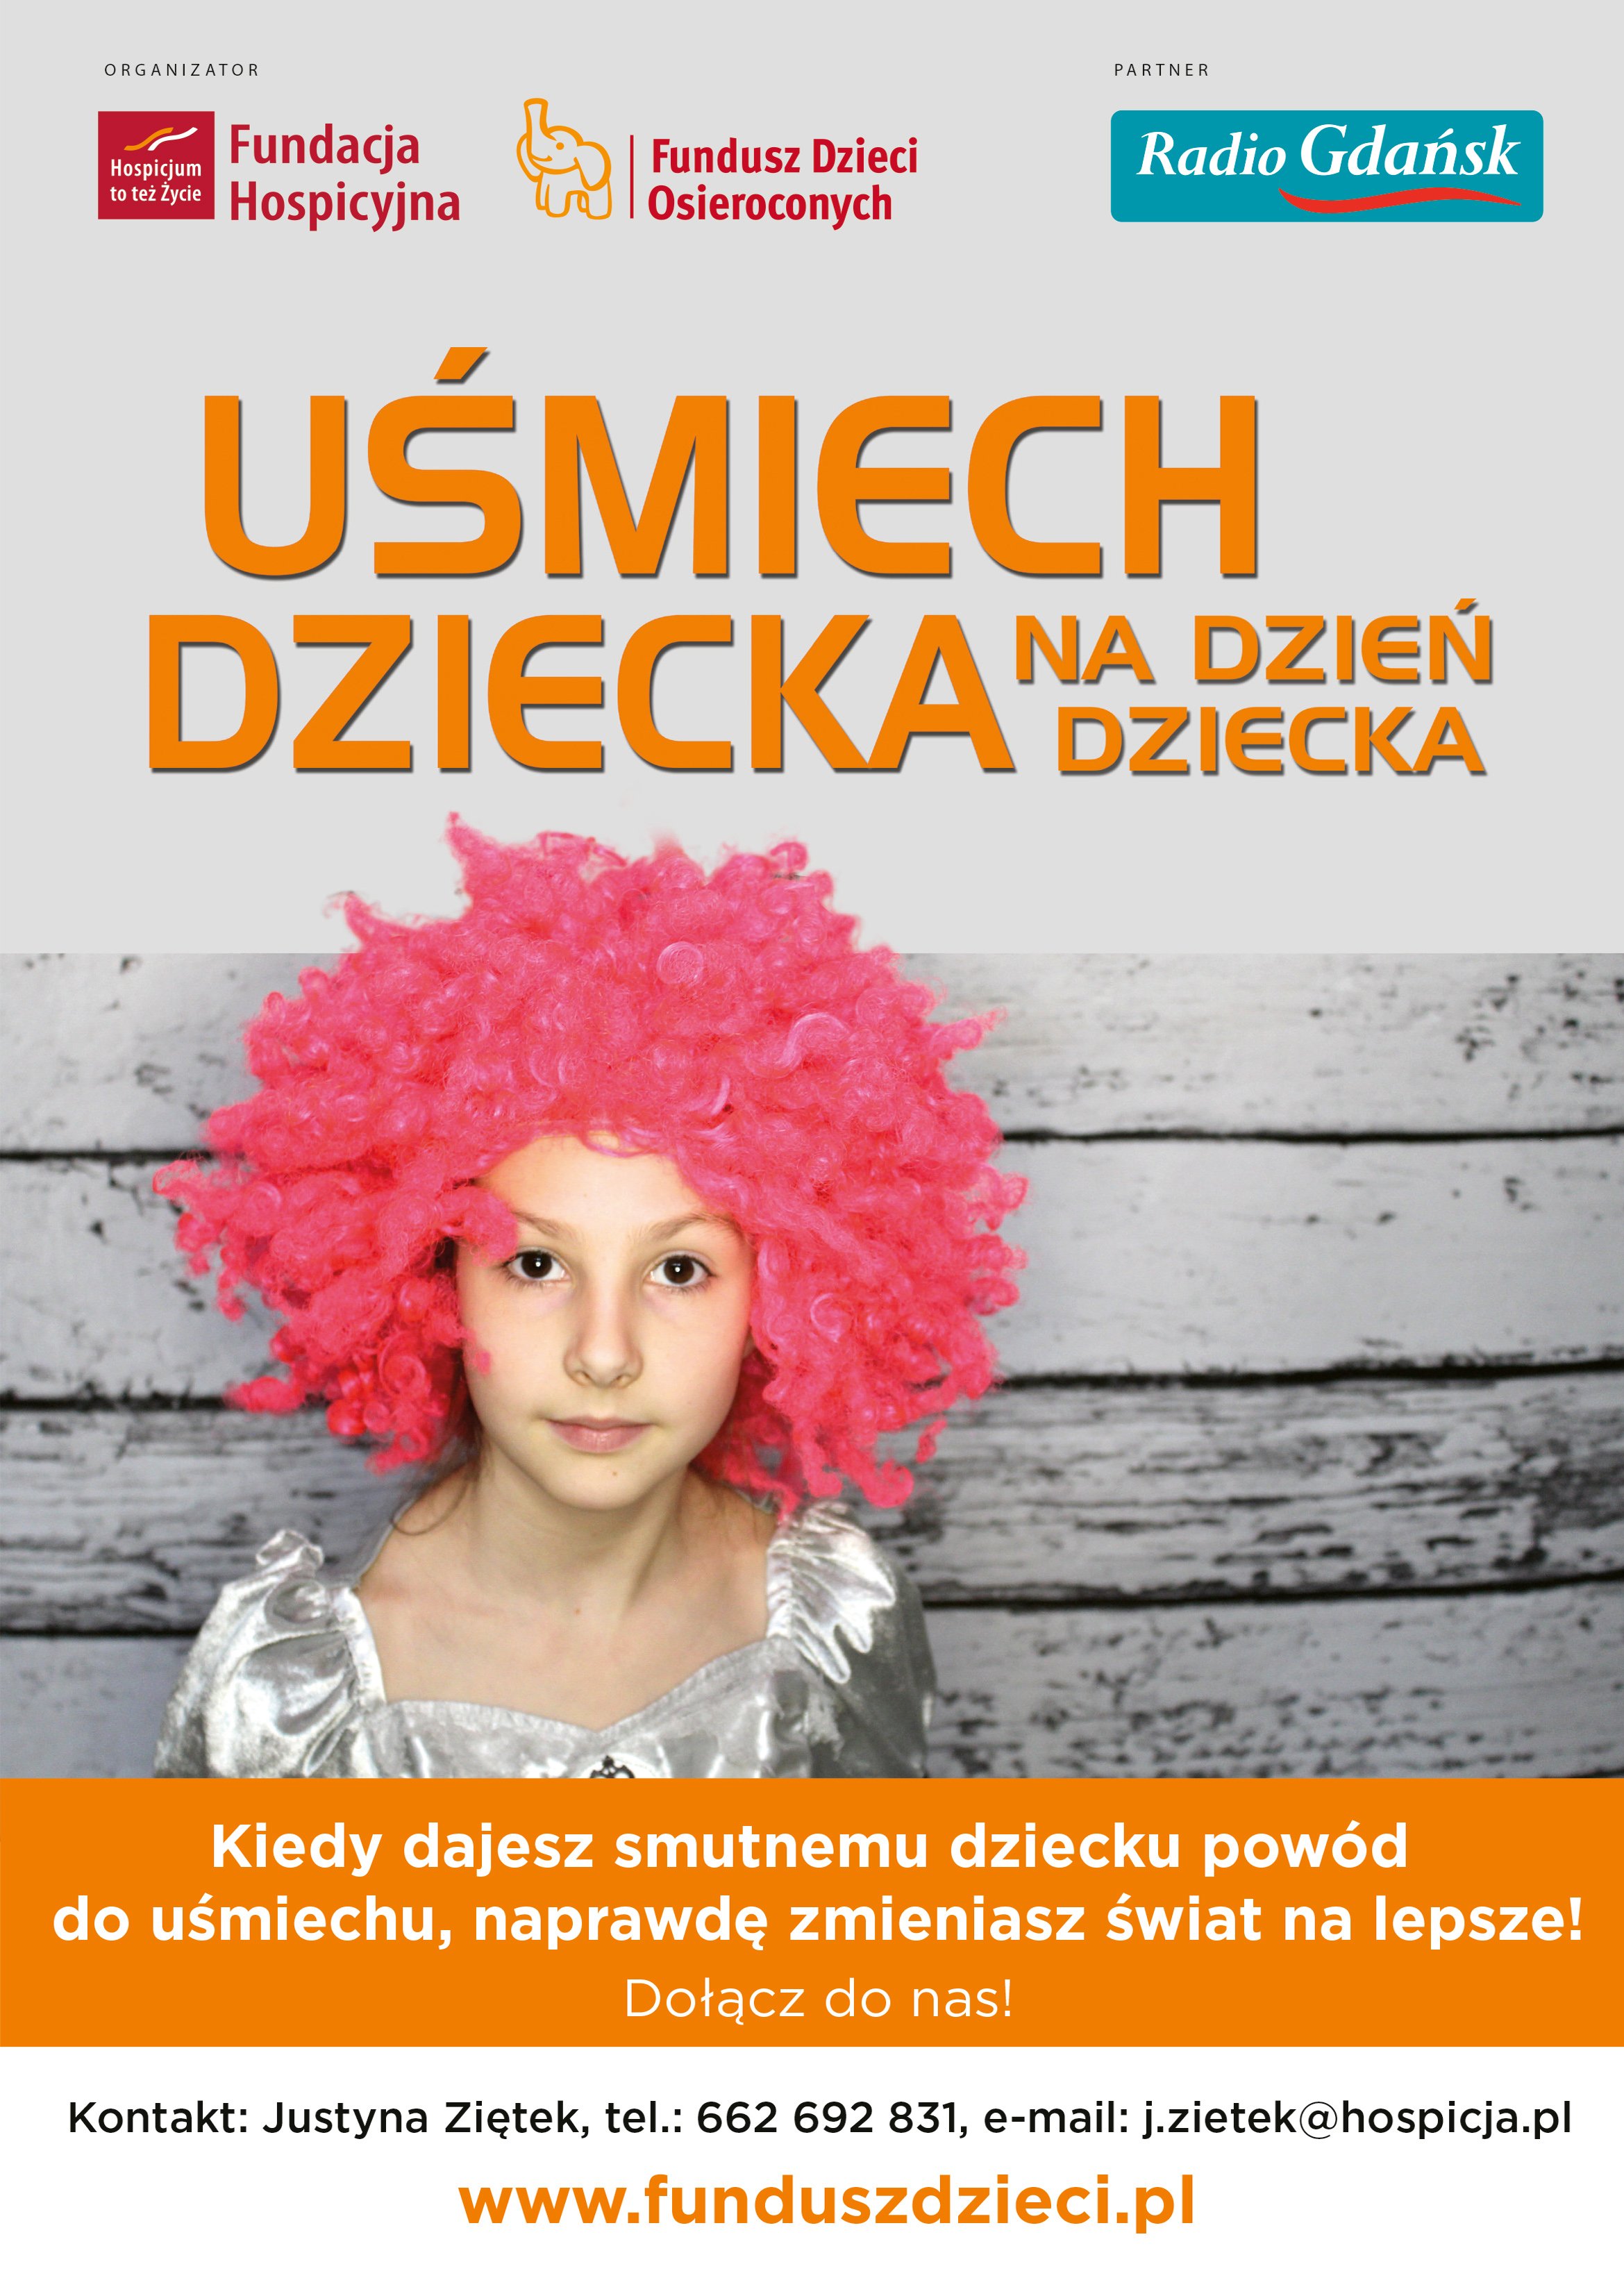 Wywołaj Uśmiech dziecka na dzień dziecka - akcja charytatywna Fundacji Hospicyjnej z Gdańska